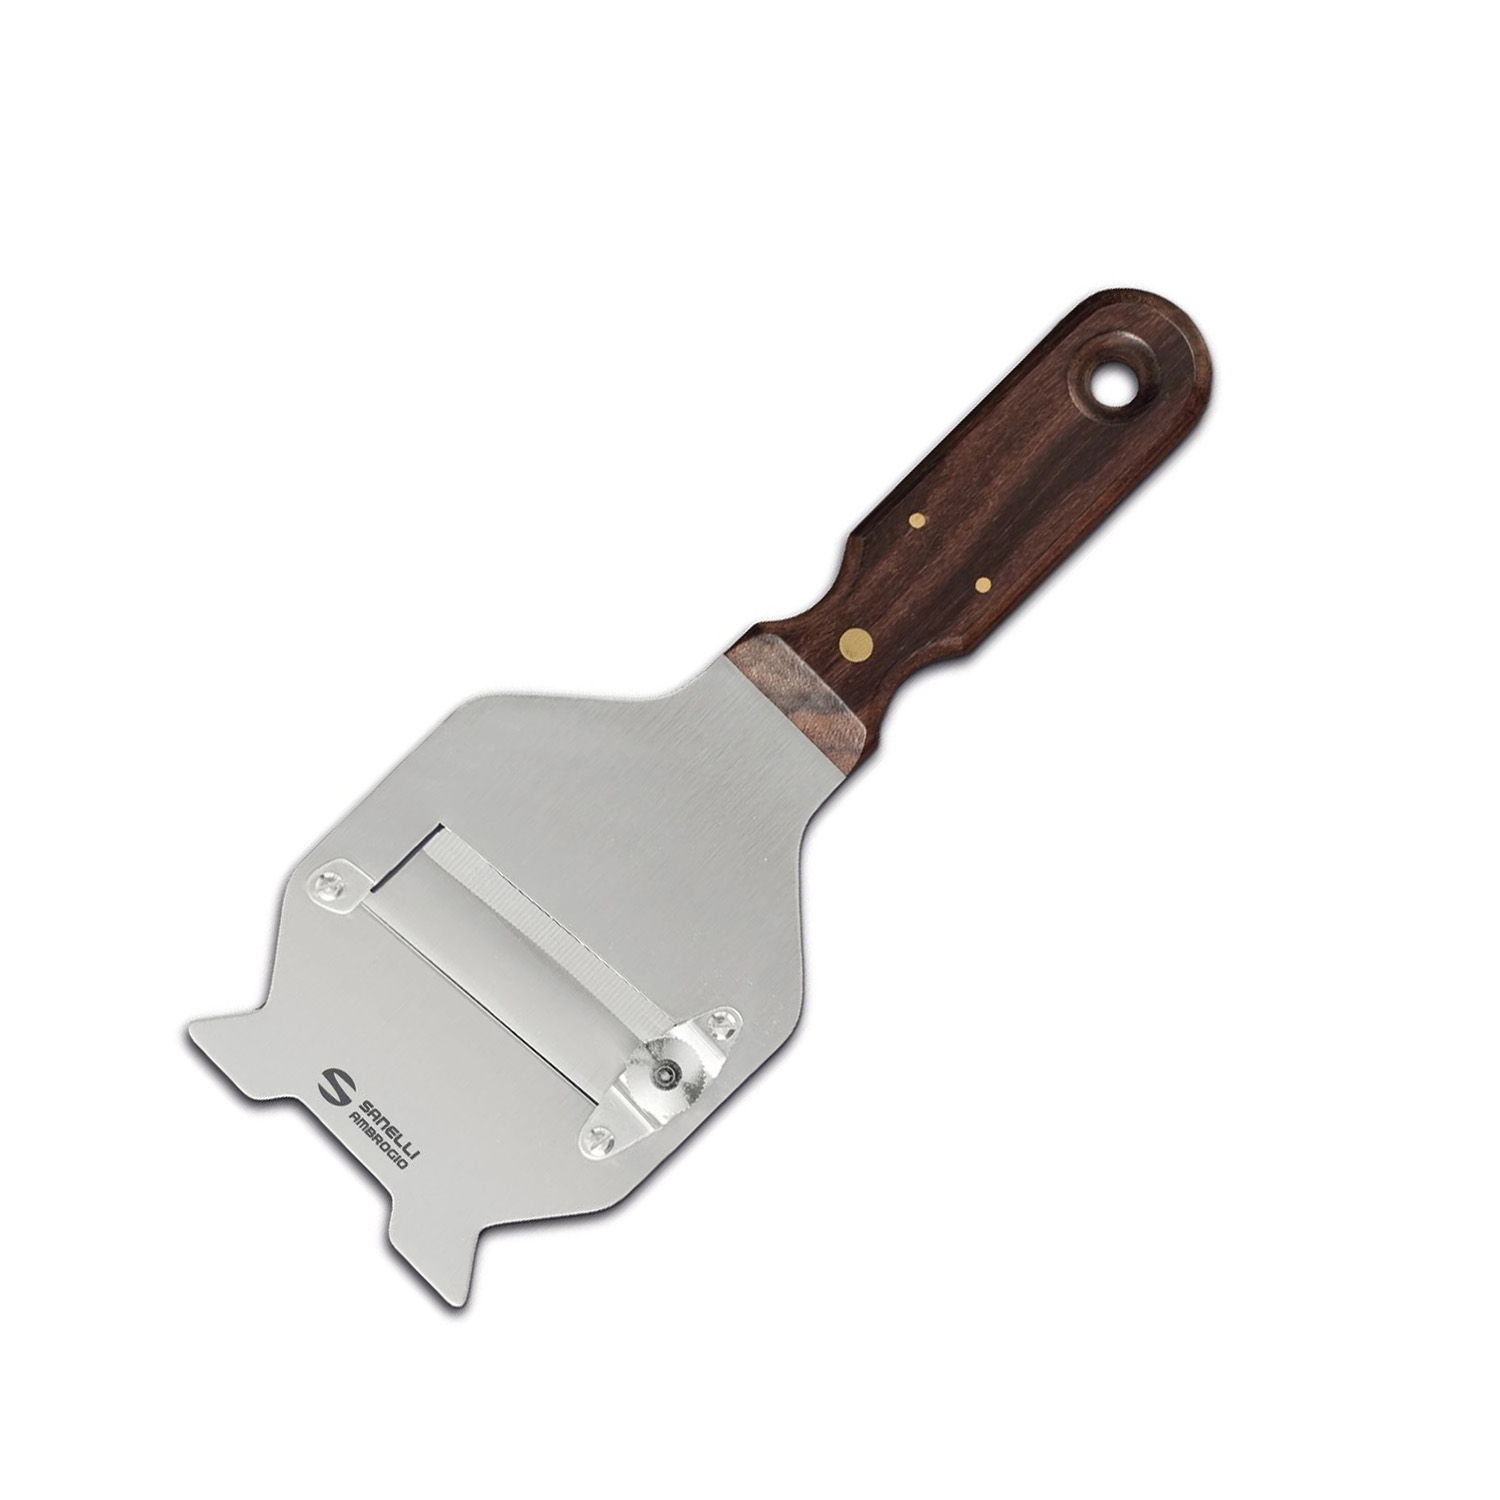 Нож / терка для трюфеля Sanelli Ambrogio нержавеющая сталь Коричневый (77903)